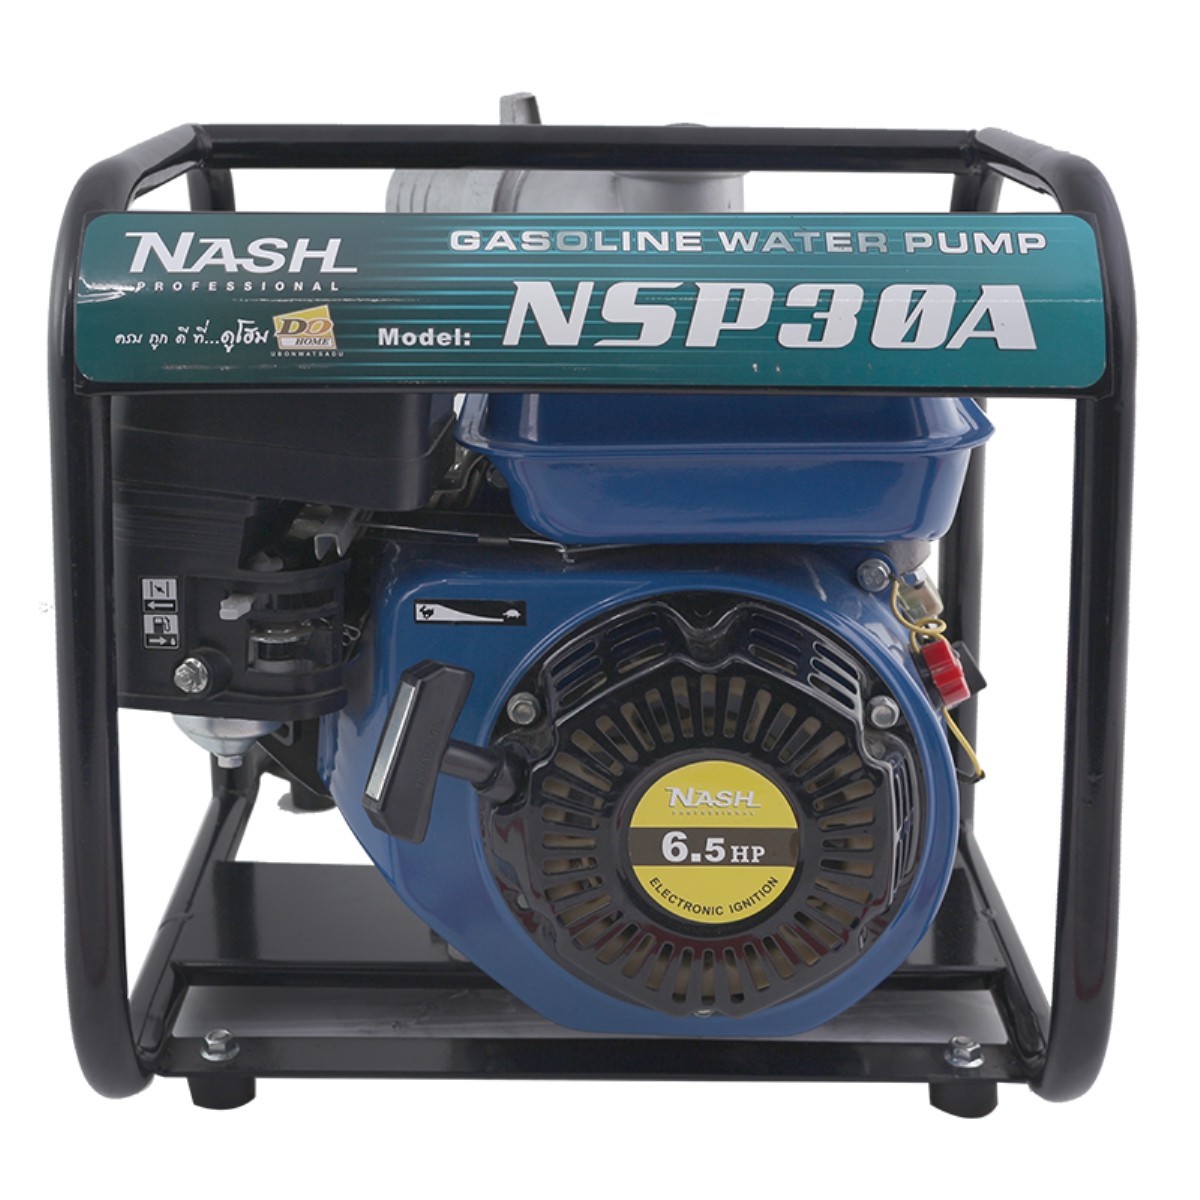 [โปรร้อนแรง!!] NASH เครื่องยนต์ปั๊มน้ำ 3 นิ้ว x 6.5 HP รุ่น NSP30A  NASH ยานยนต์และอุปกรณ์ ราคาถูก